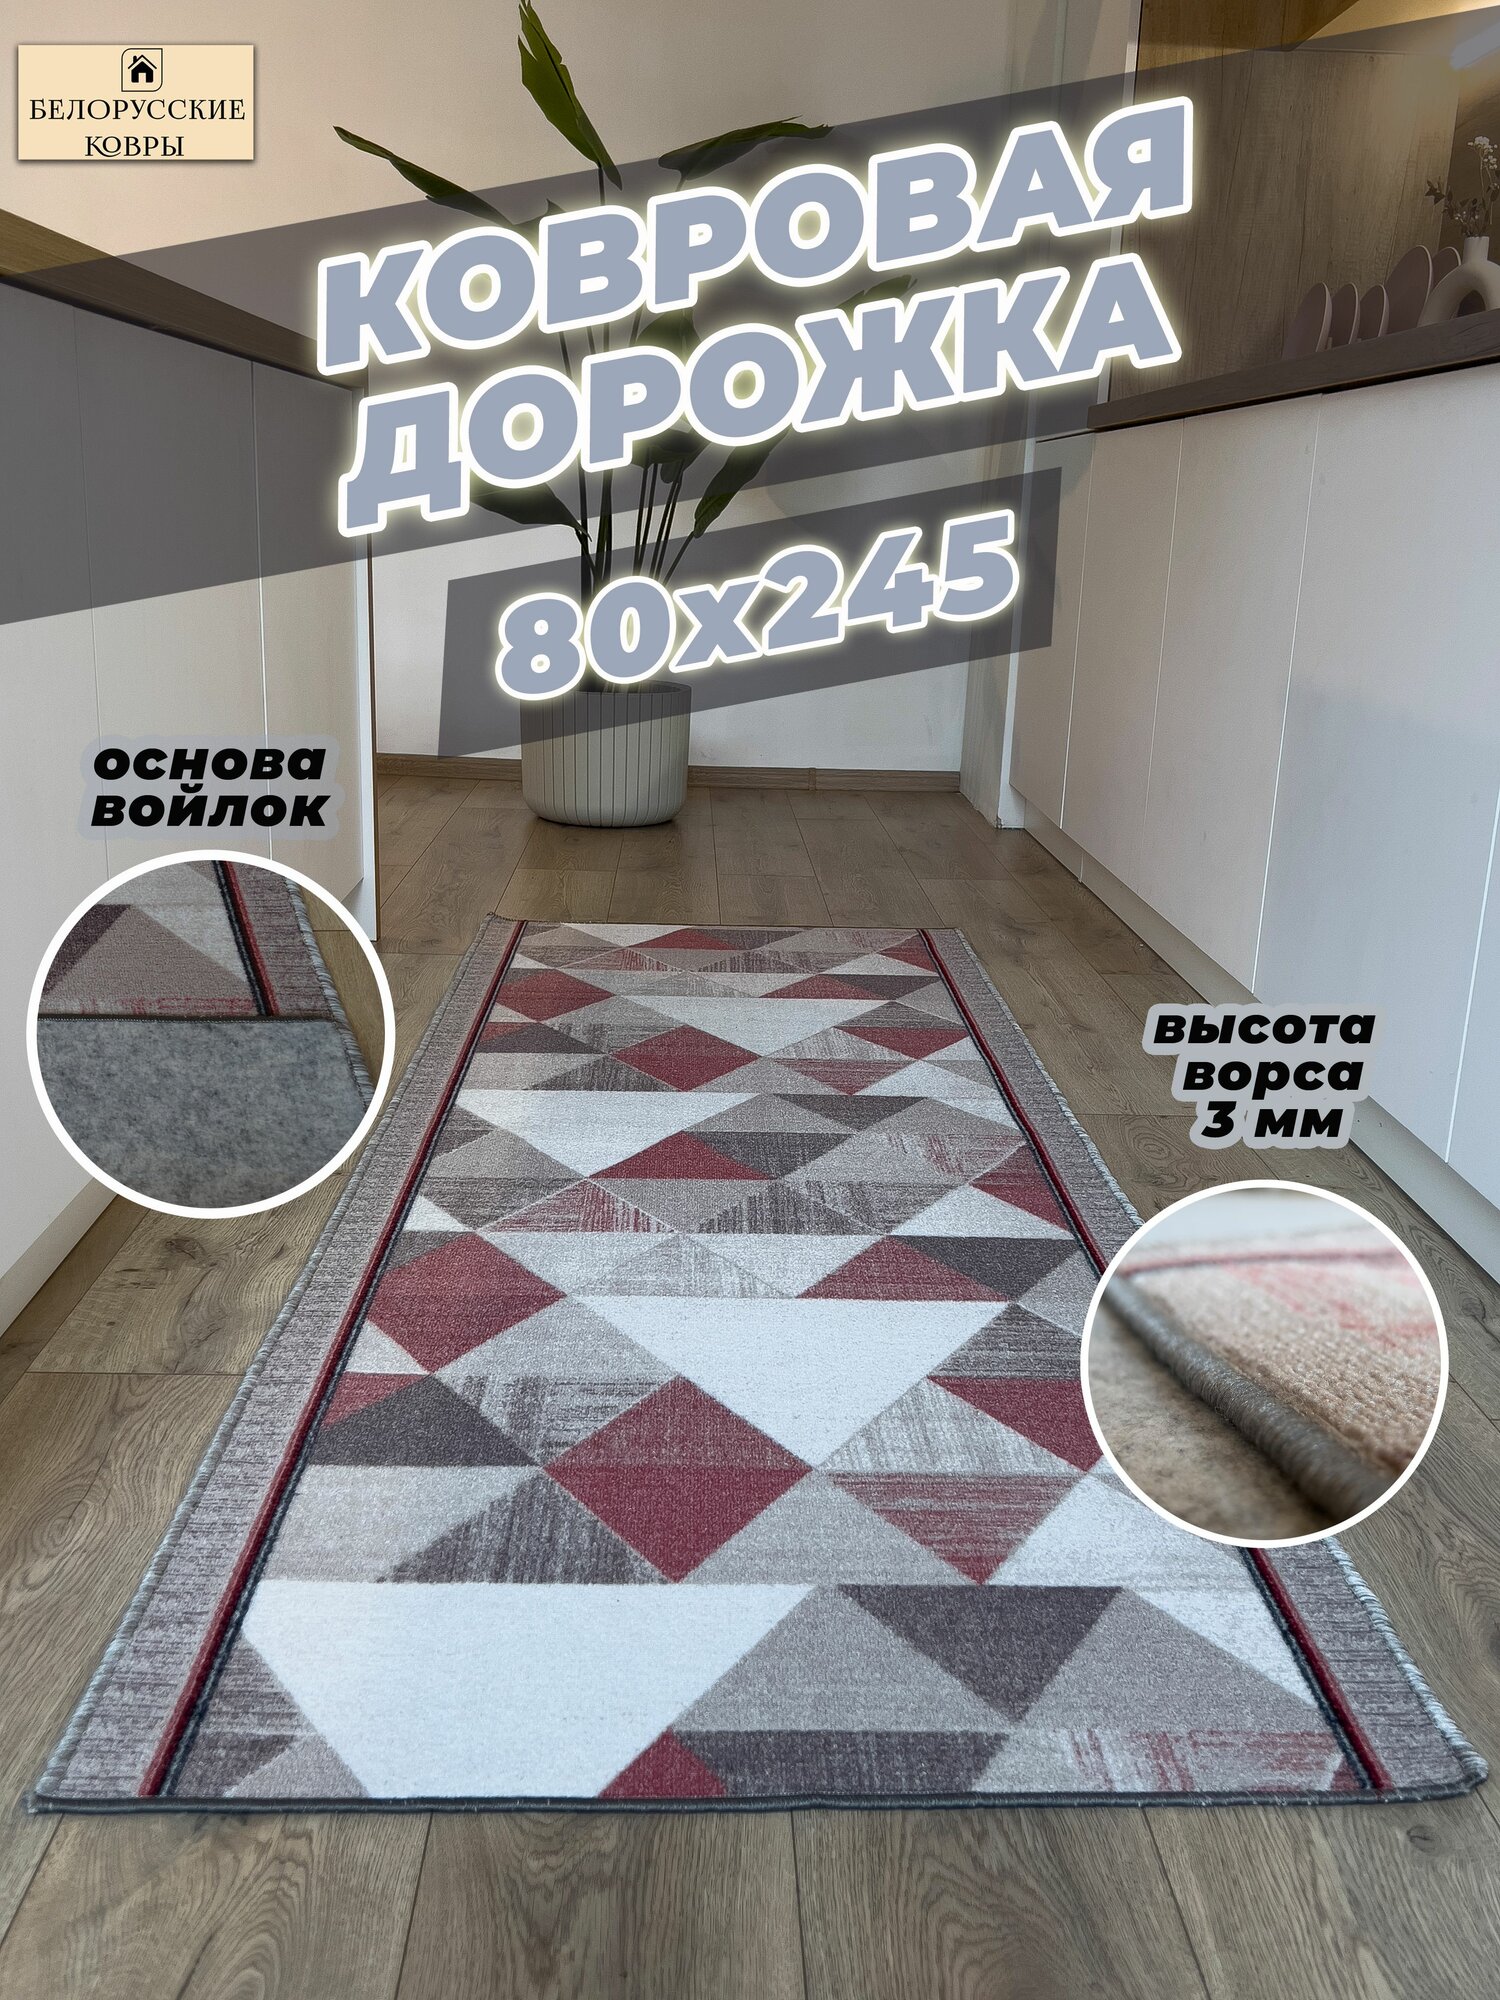 Белорусские ковры, ковровая дорожка 80х245см./0,8х2,45м.